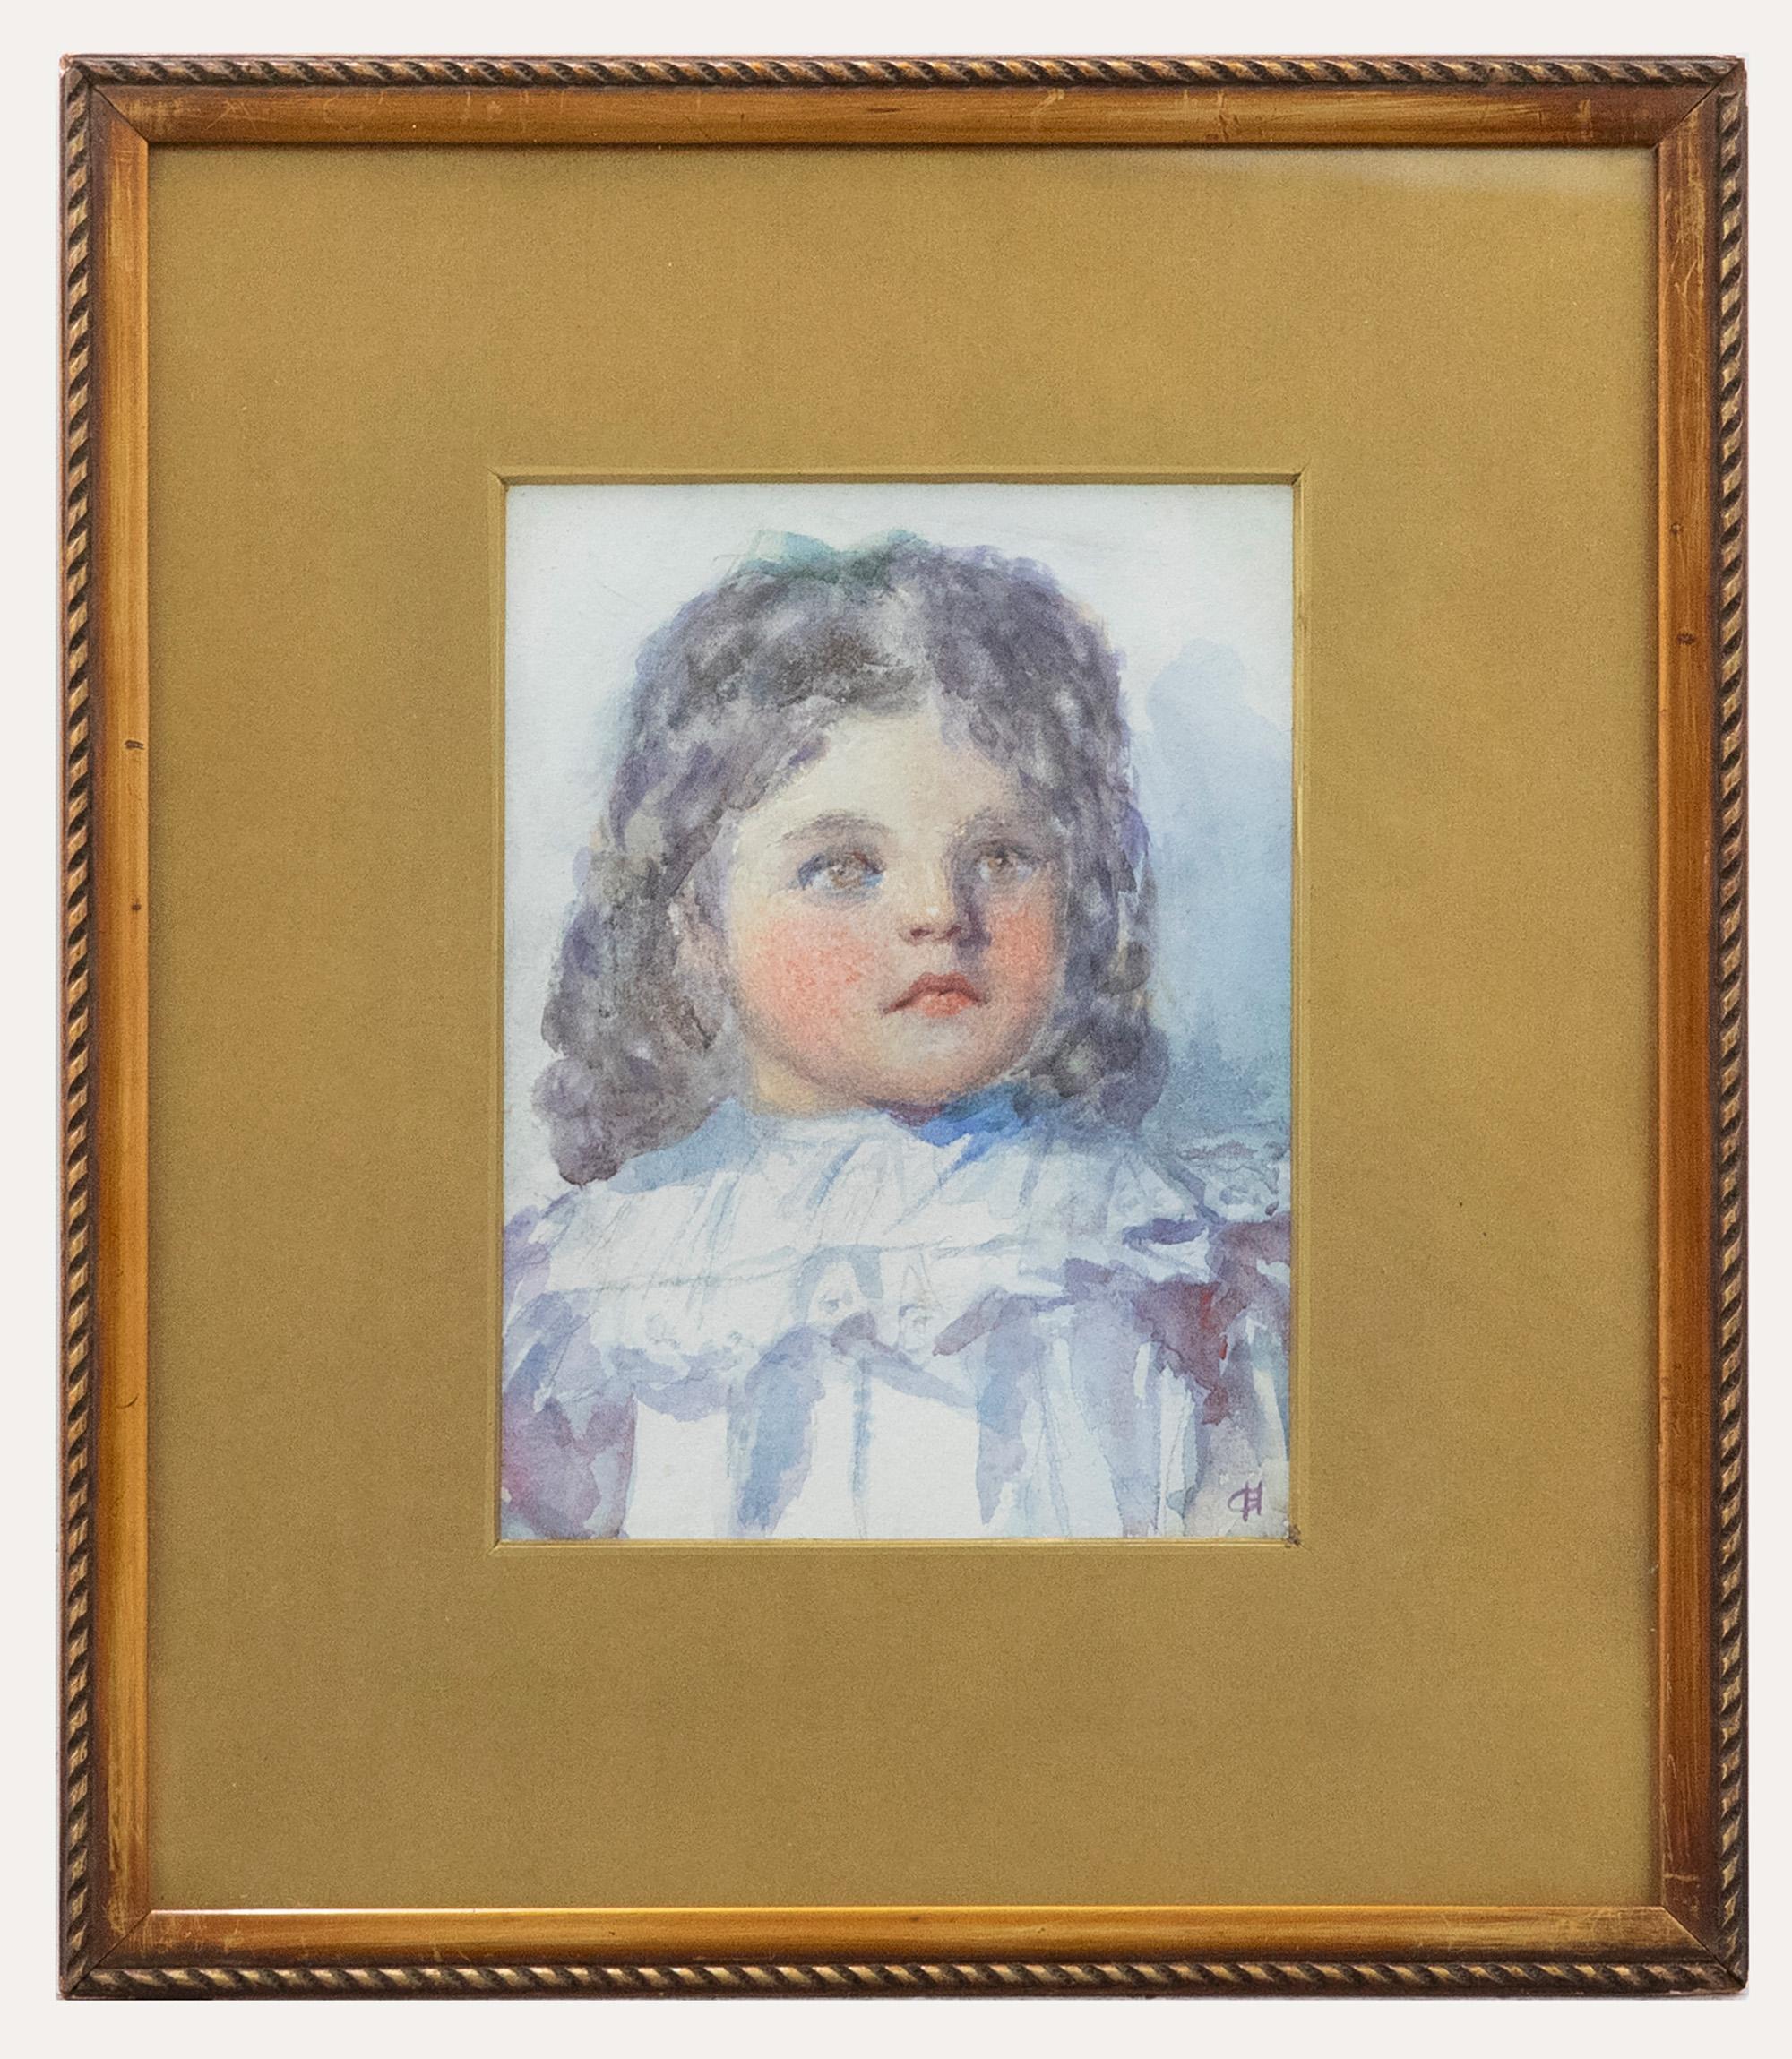 Ein zartes Aquarellporträt eines Mädchens der britischen Malerin und Illustratorin Gertrude Demain Hammond (1862-1953). Gut präsentiert in einem dekorativen Rahmen mit Vergoldungseffekt und einem Band mit Laufmuster und einer einfachen vergoldeten